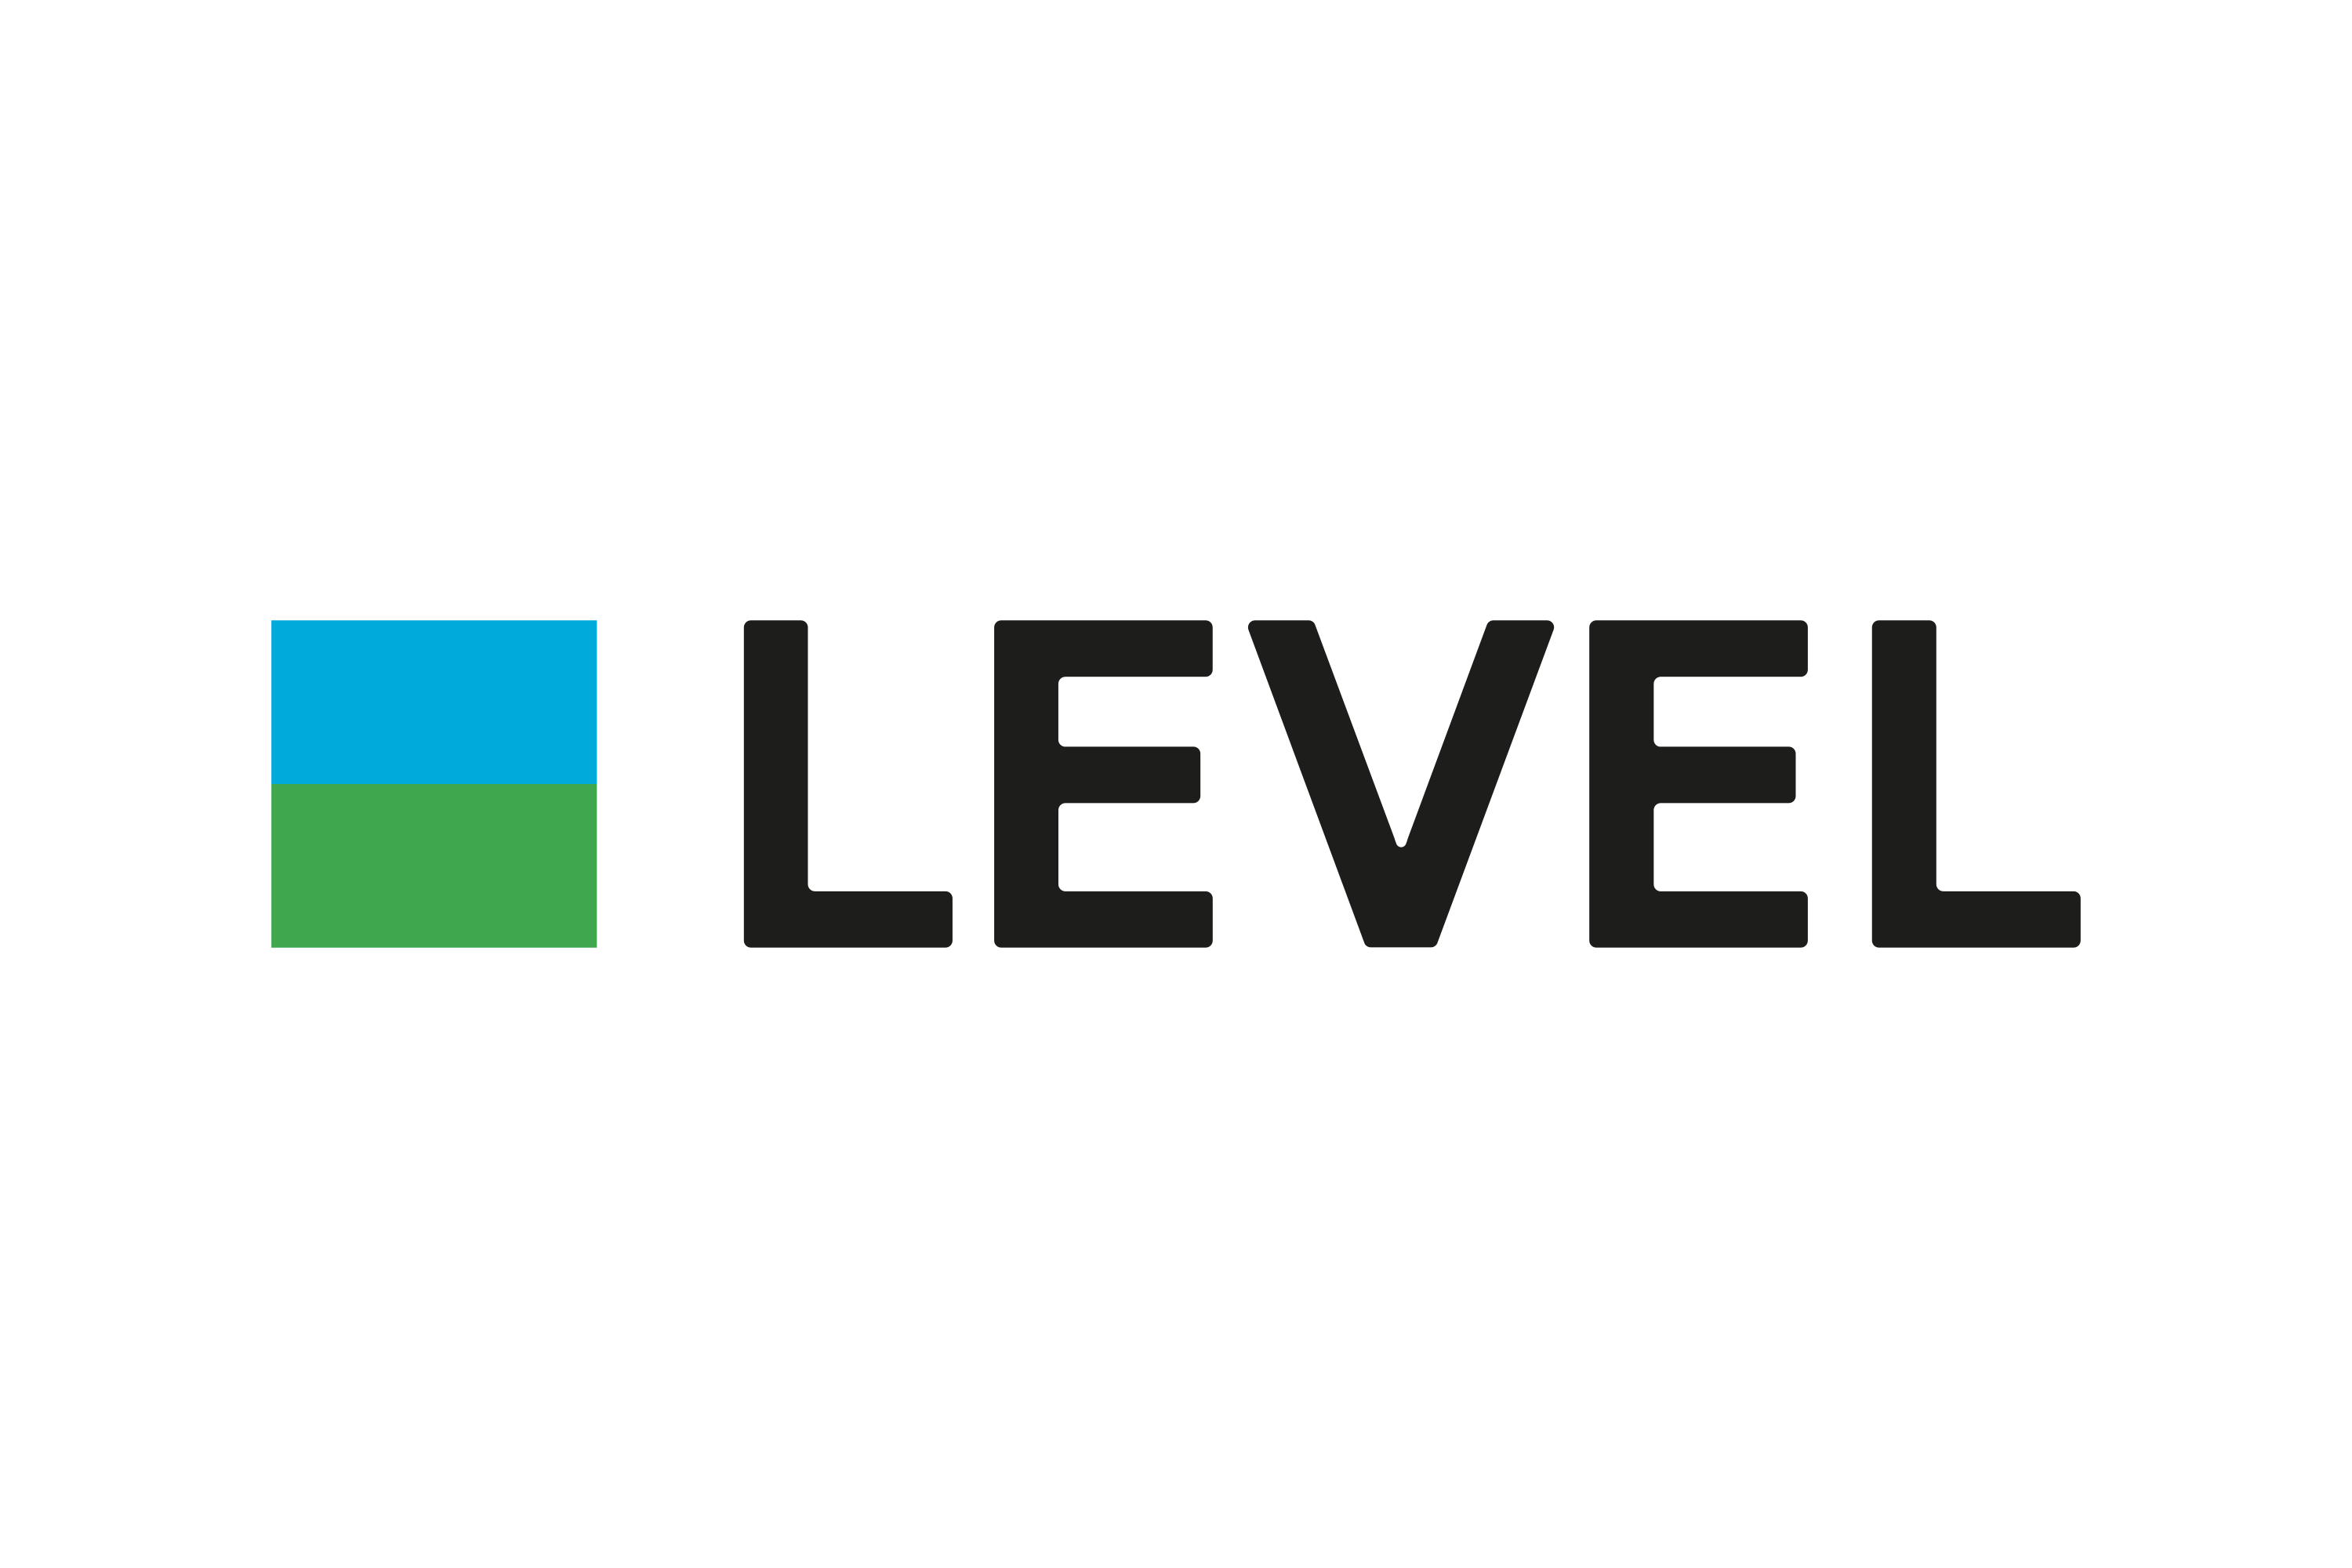 Download Download Level Logo in SVG Vector or PNG File Format ...